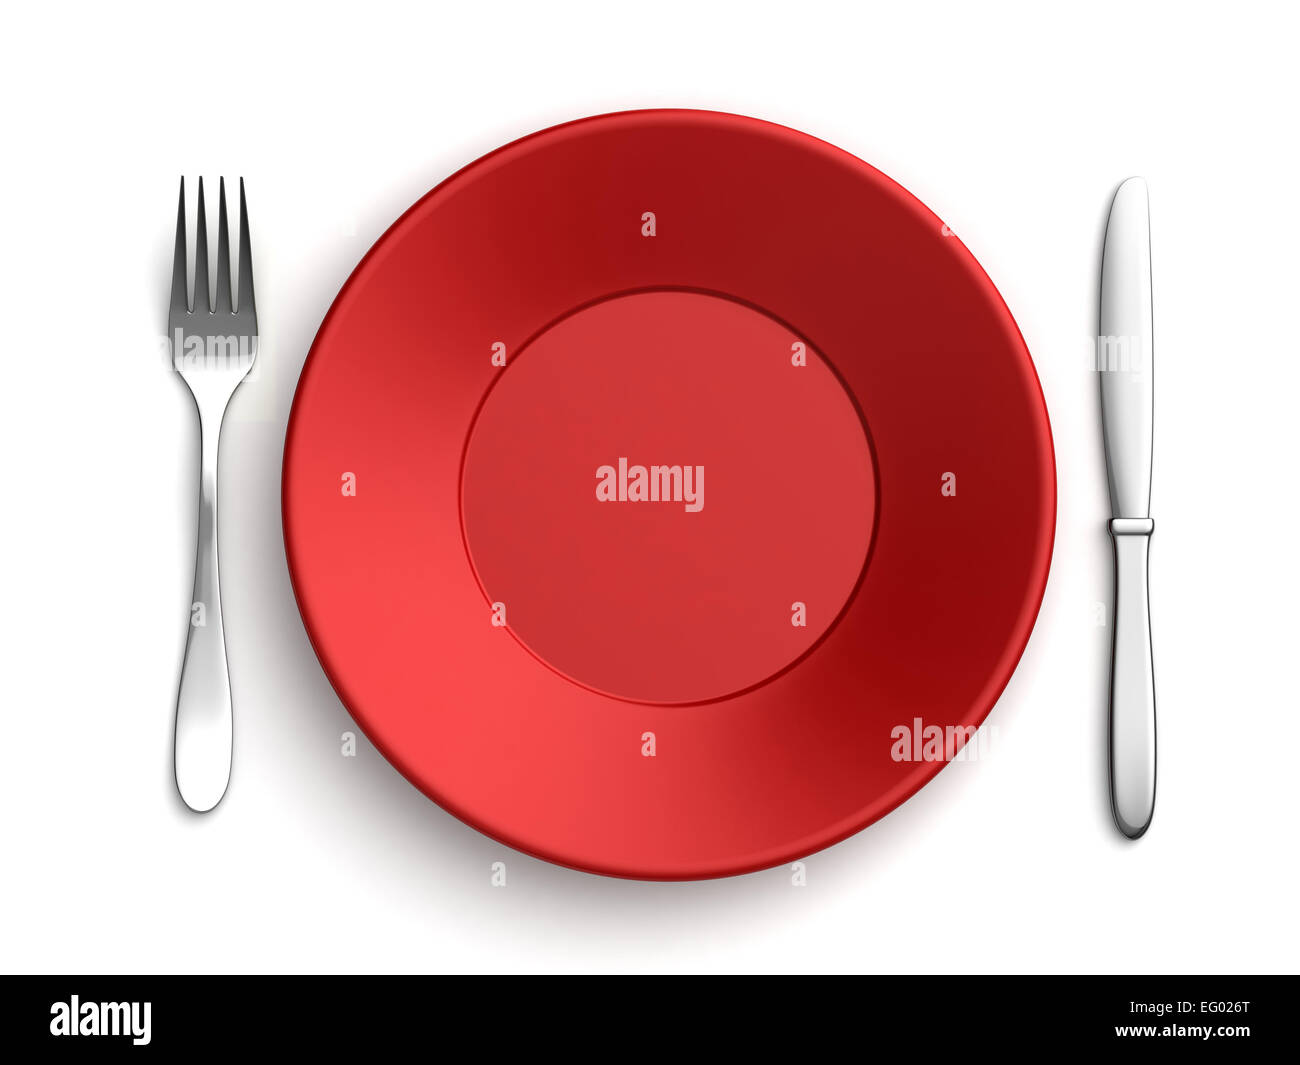 Le rendu 3D de couteaux, fourchettes et plaque rouge sur fond blanc Banque D'Images